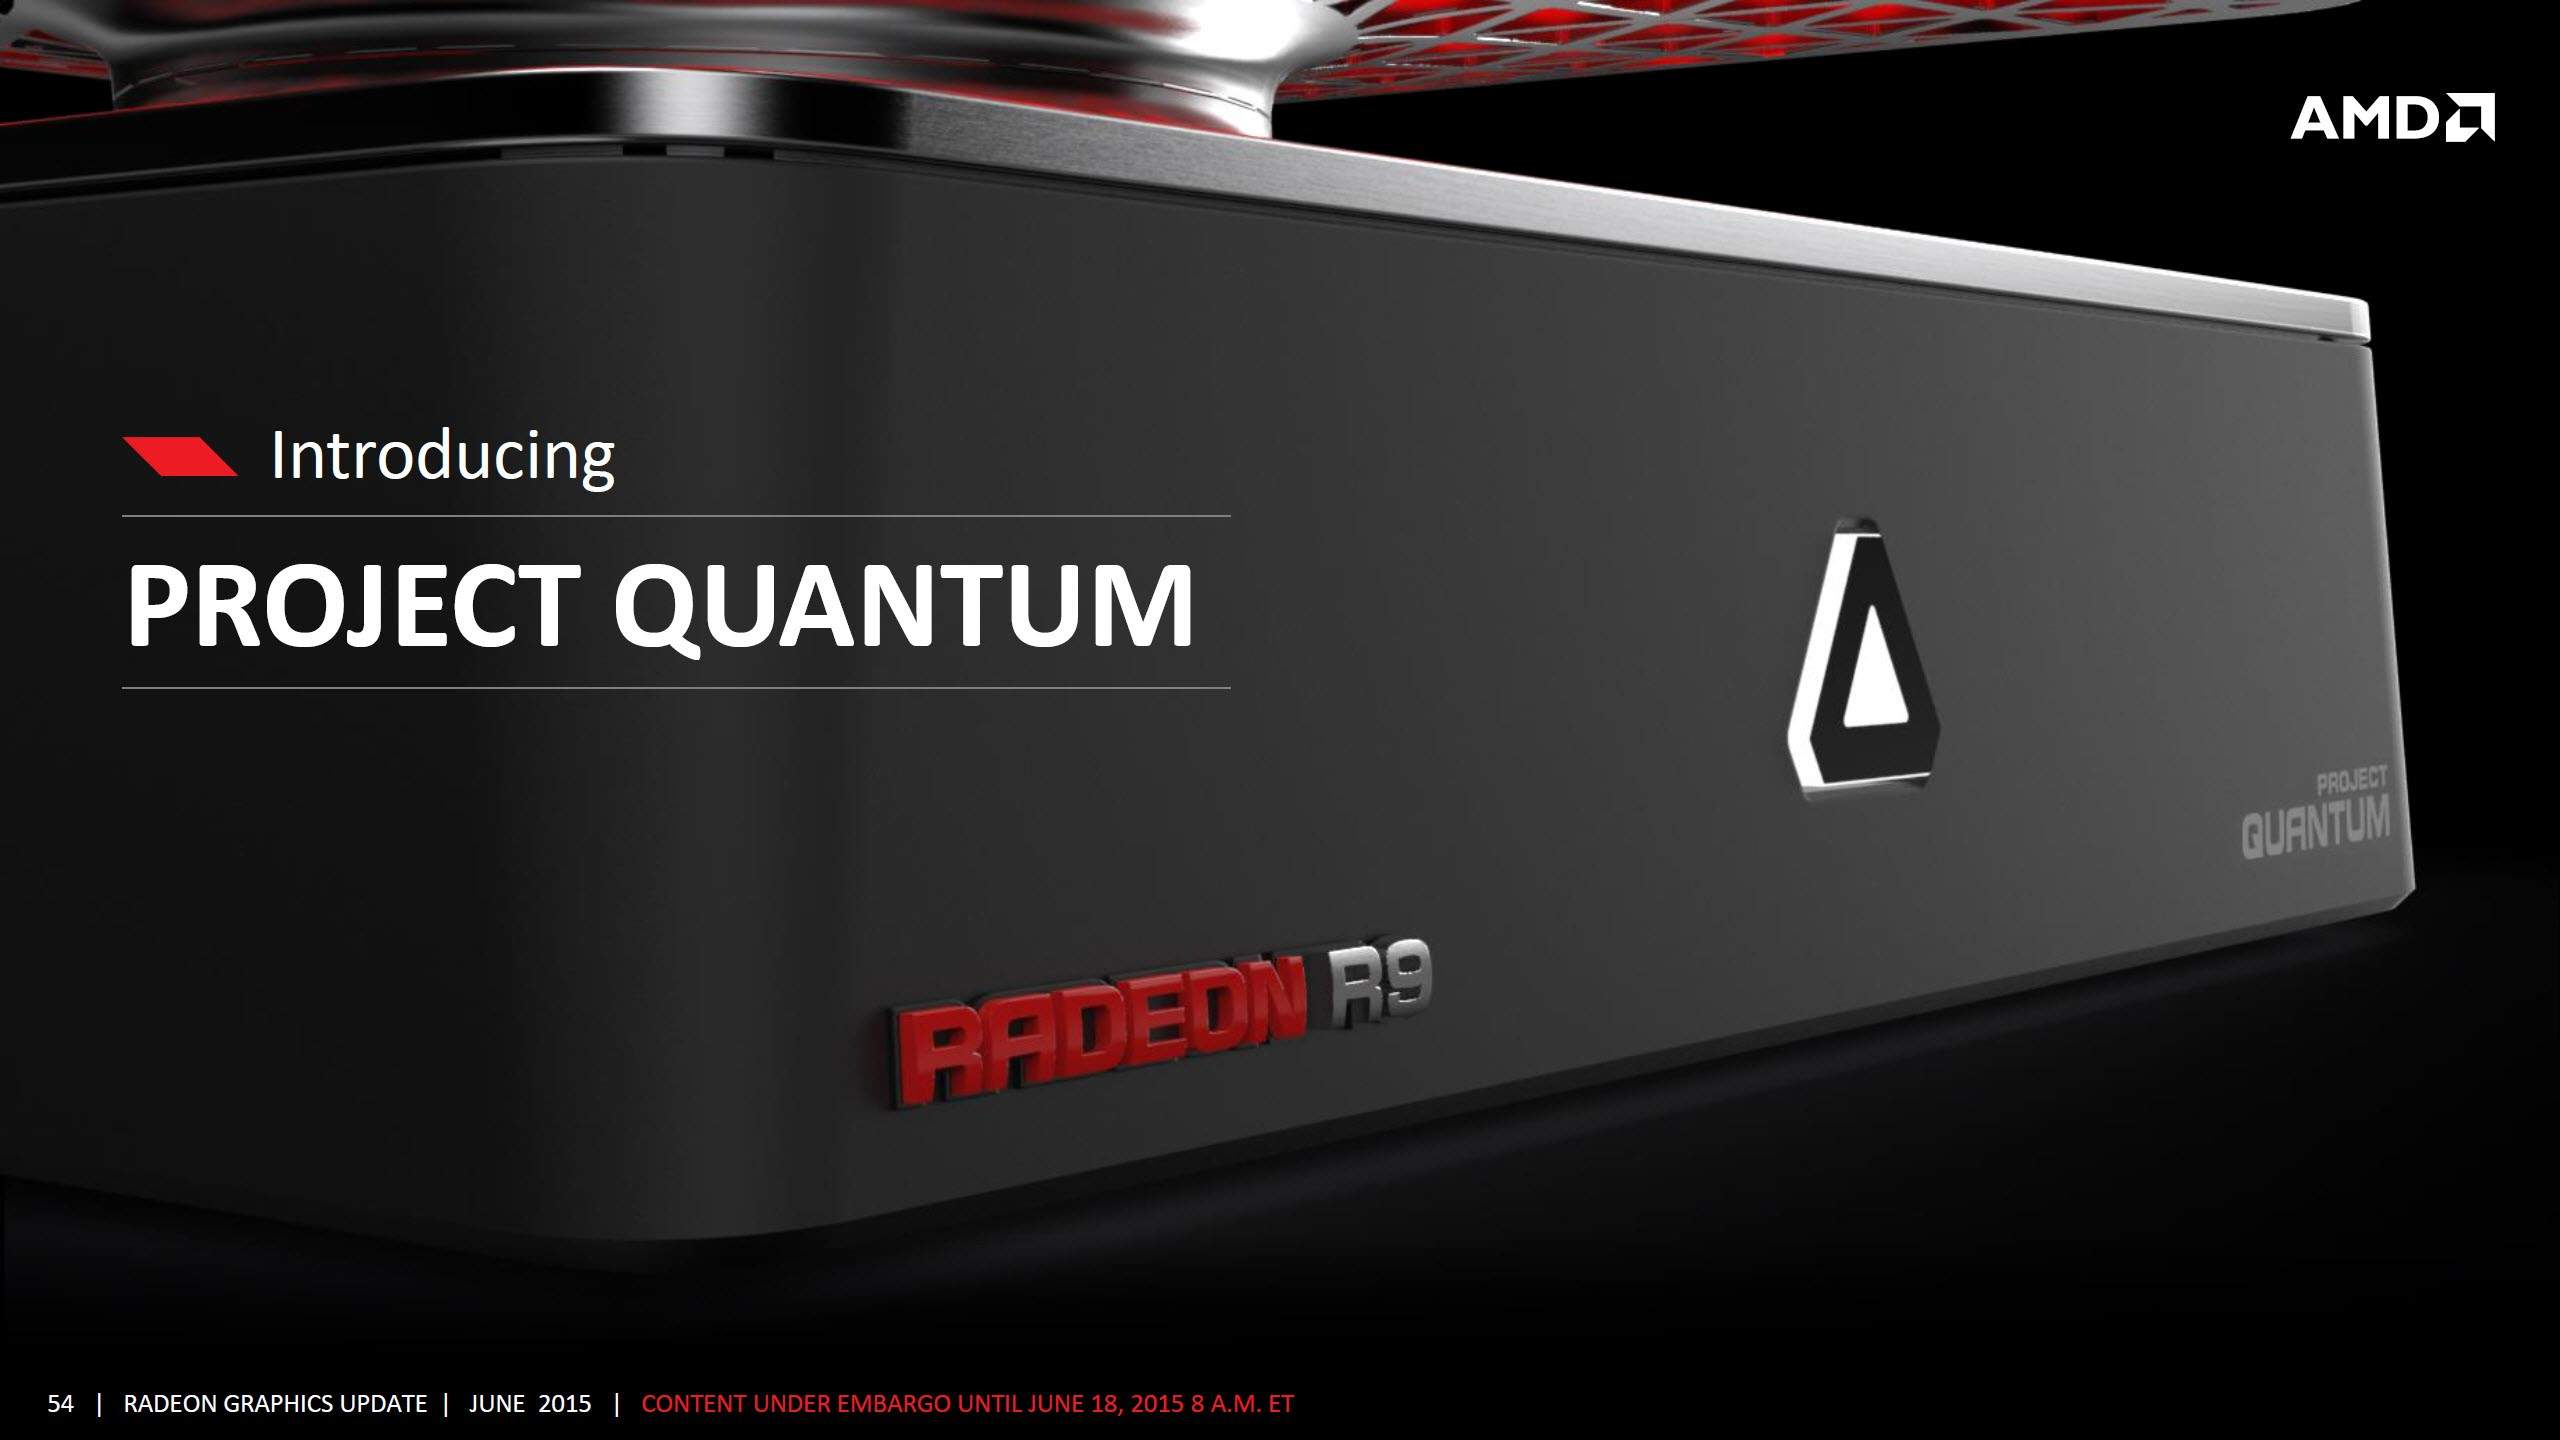 AMD Project Quantum Mini PC Gaming Pricebook